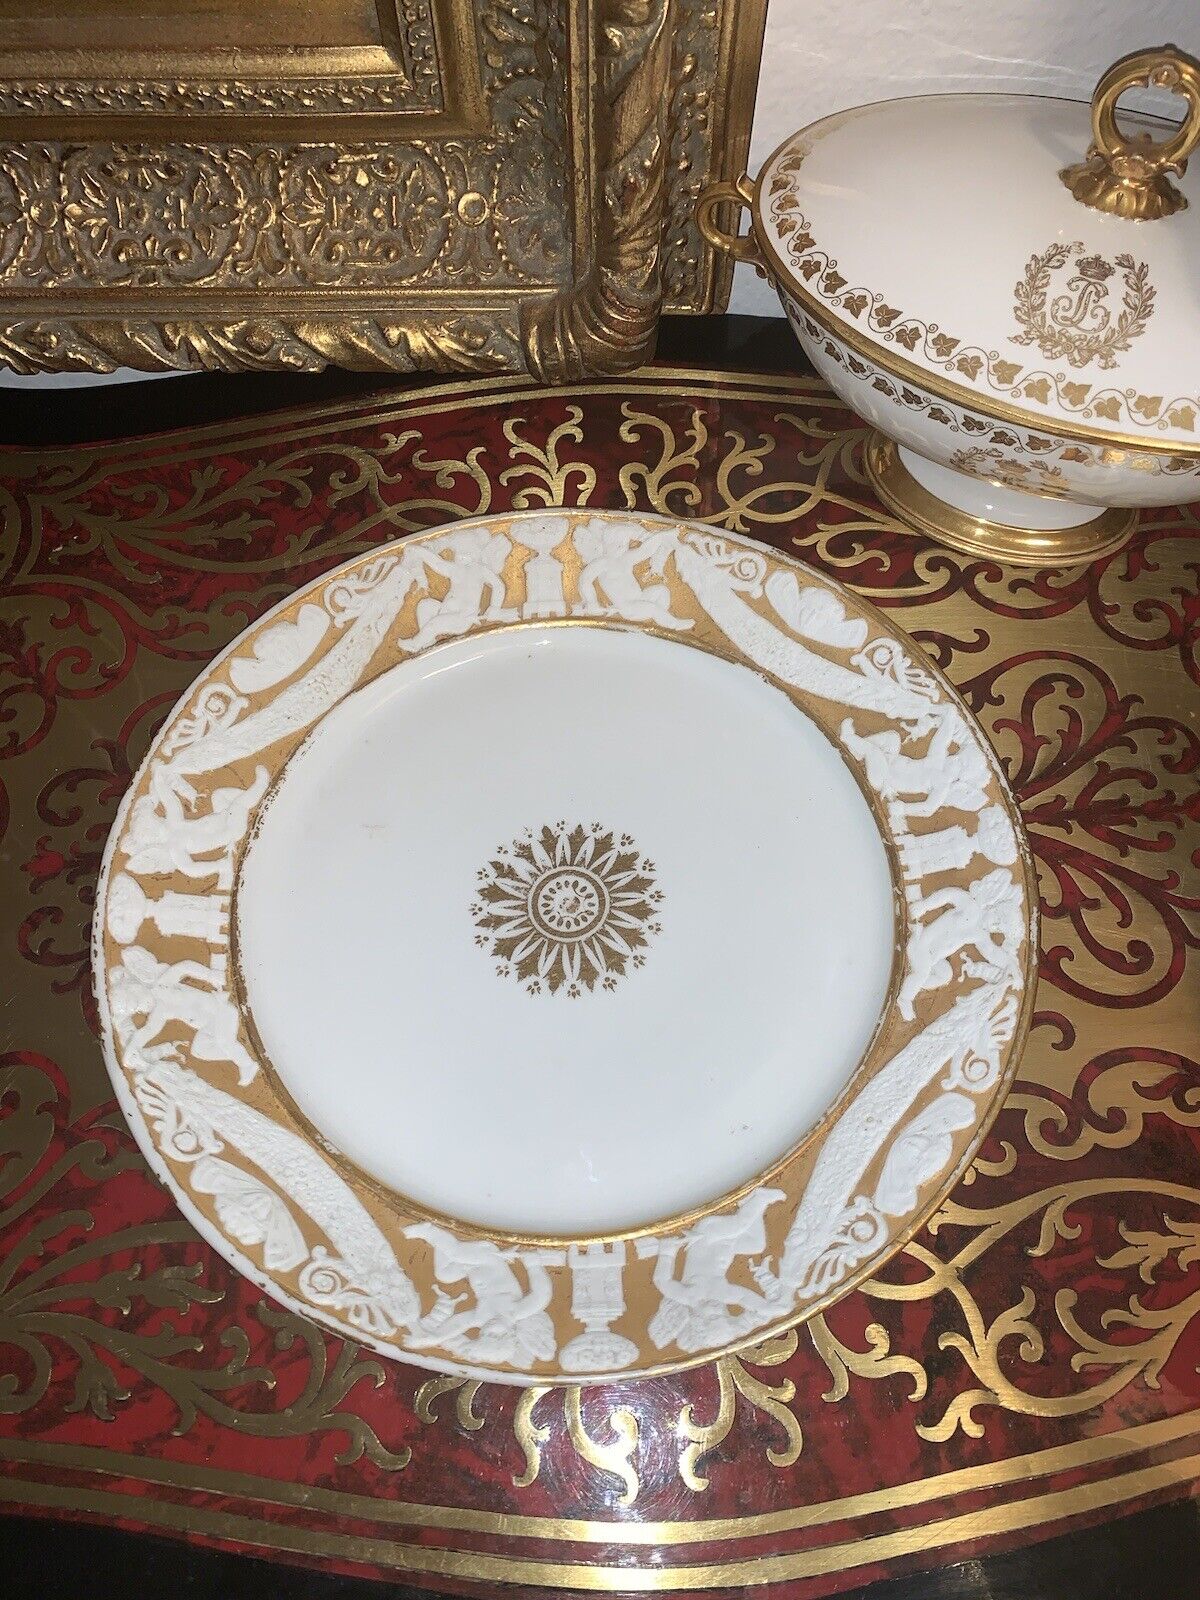 Samson Porcelain copy of M. Imp le de Sevres Gilt & Biscuit Plate 1800’s